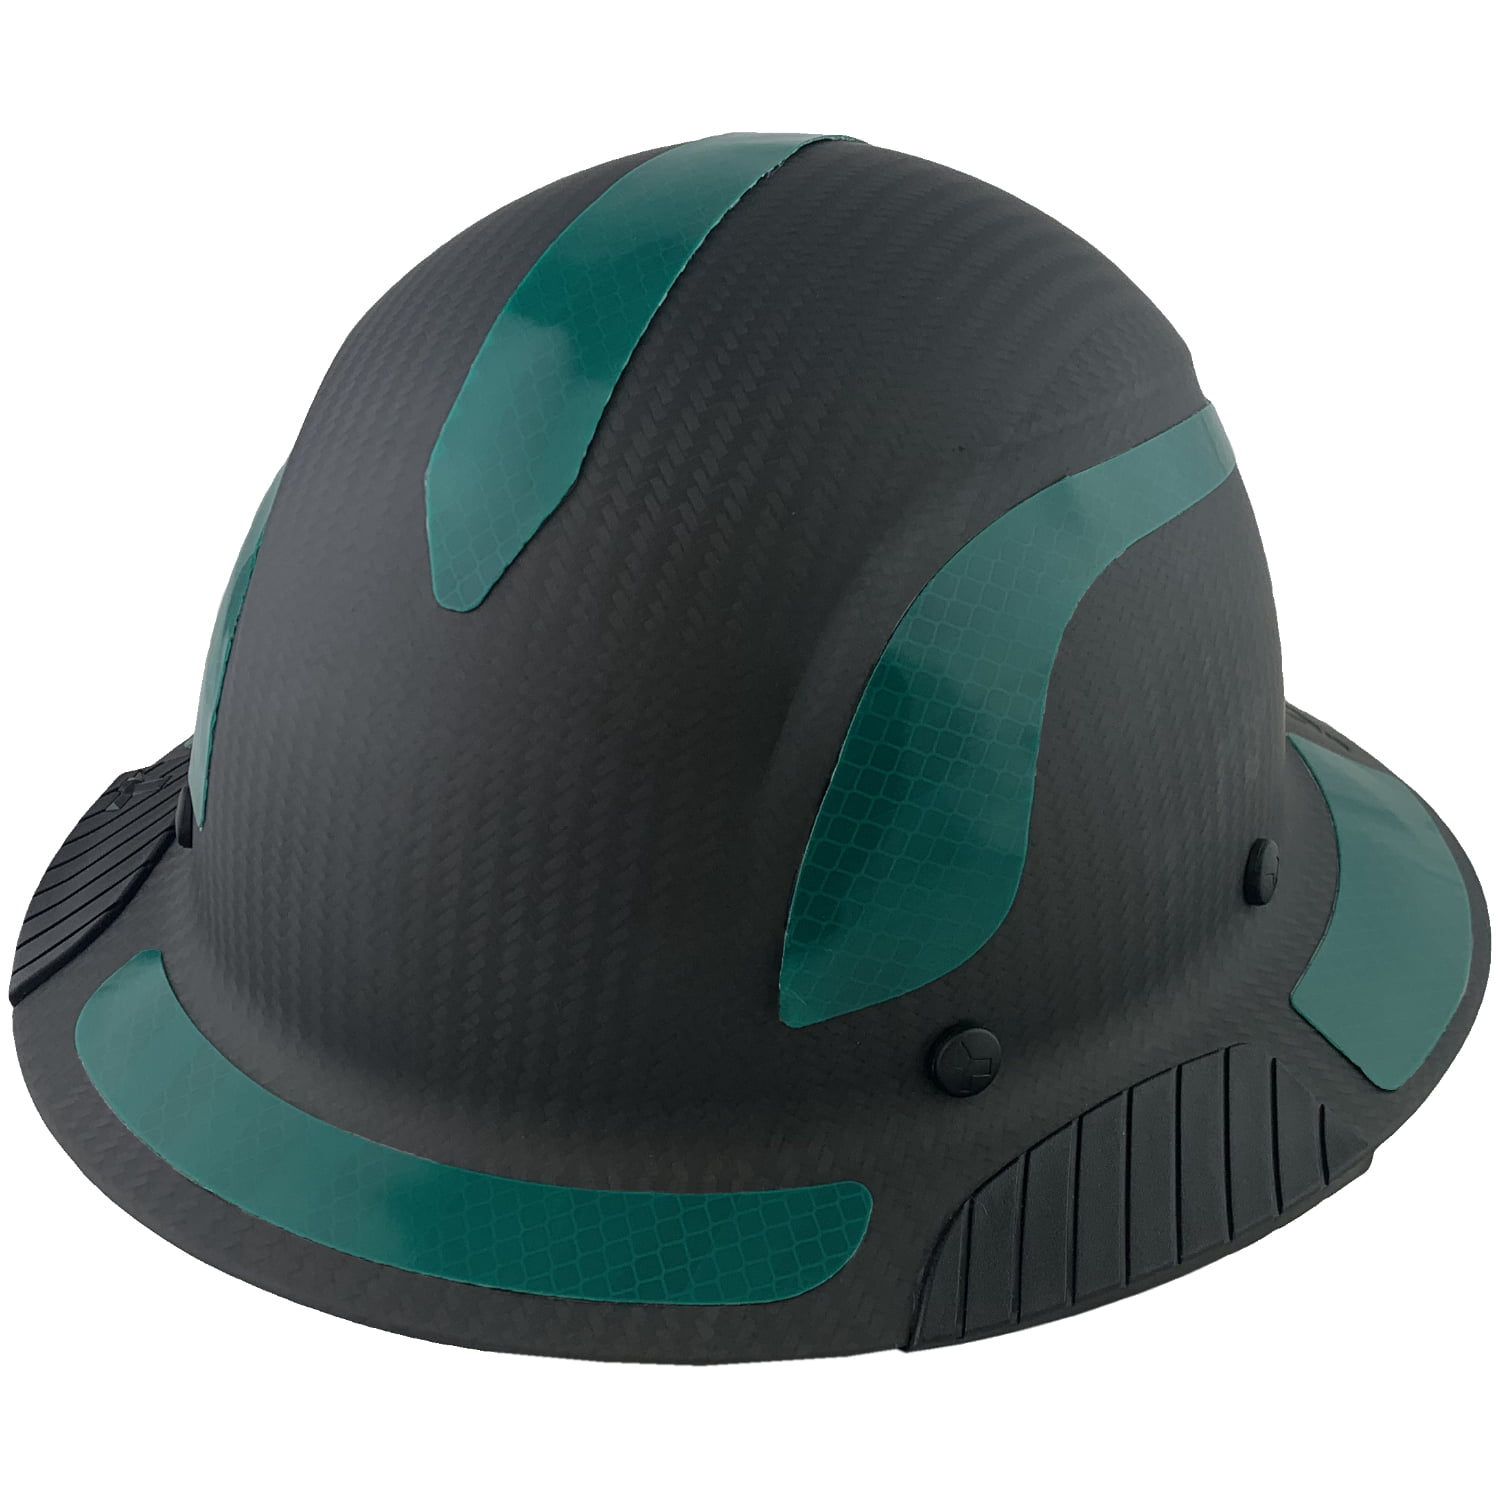 Full Brim Hard Hat 4 Pt Ratchet Suspension Safety Helmet Carbon Fiber Matte New 